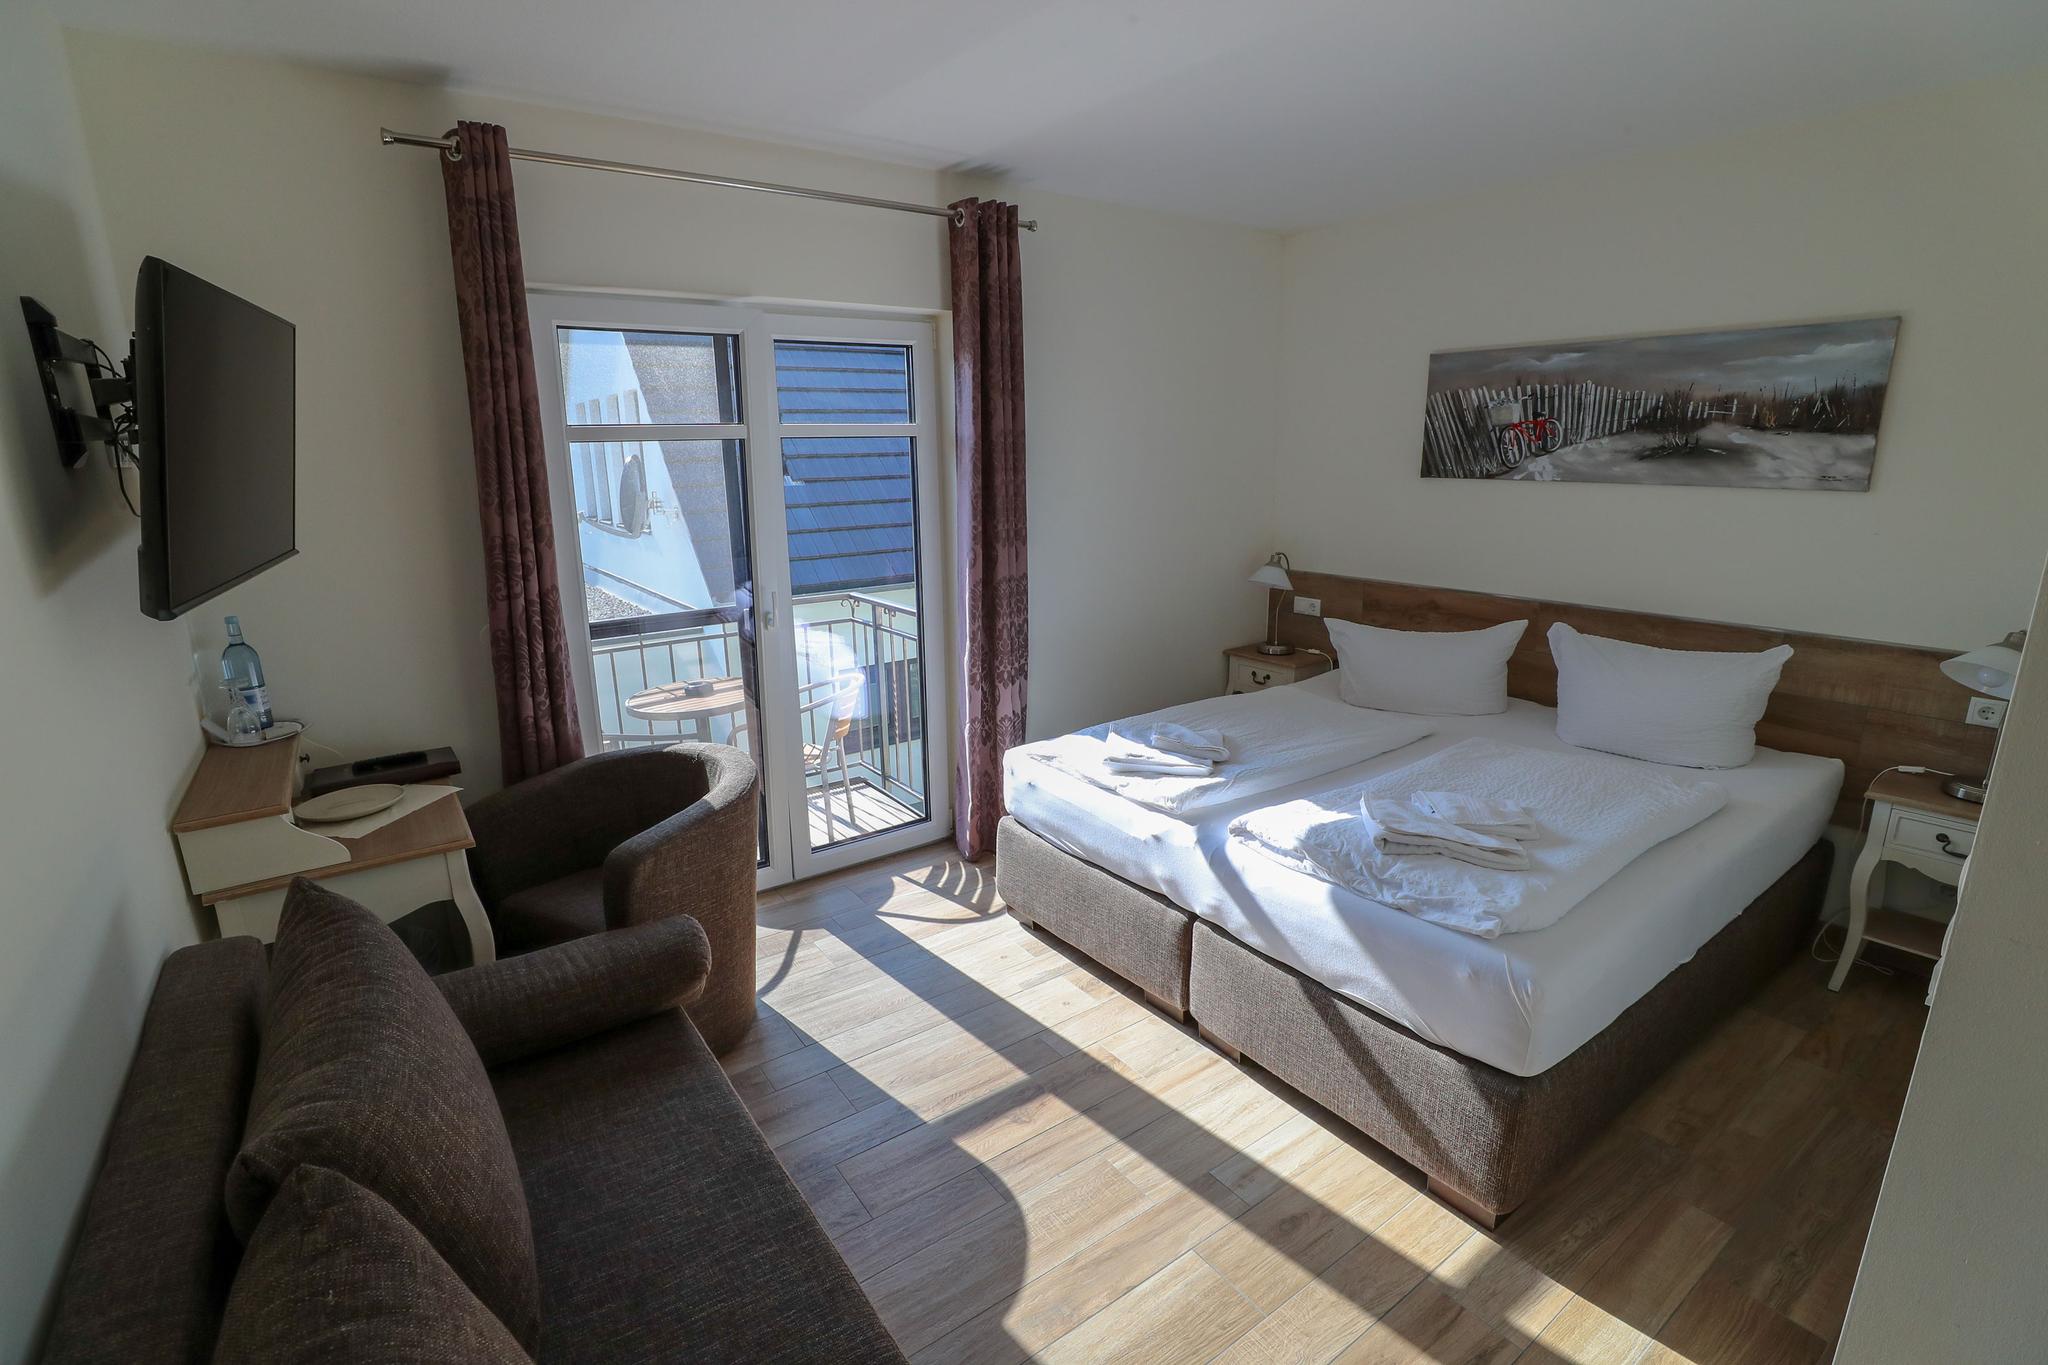 Hotelzimmer mit Doppelbett